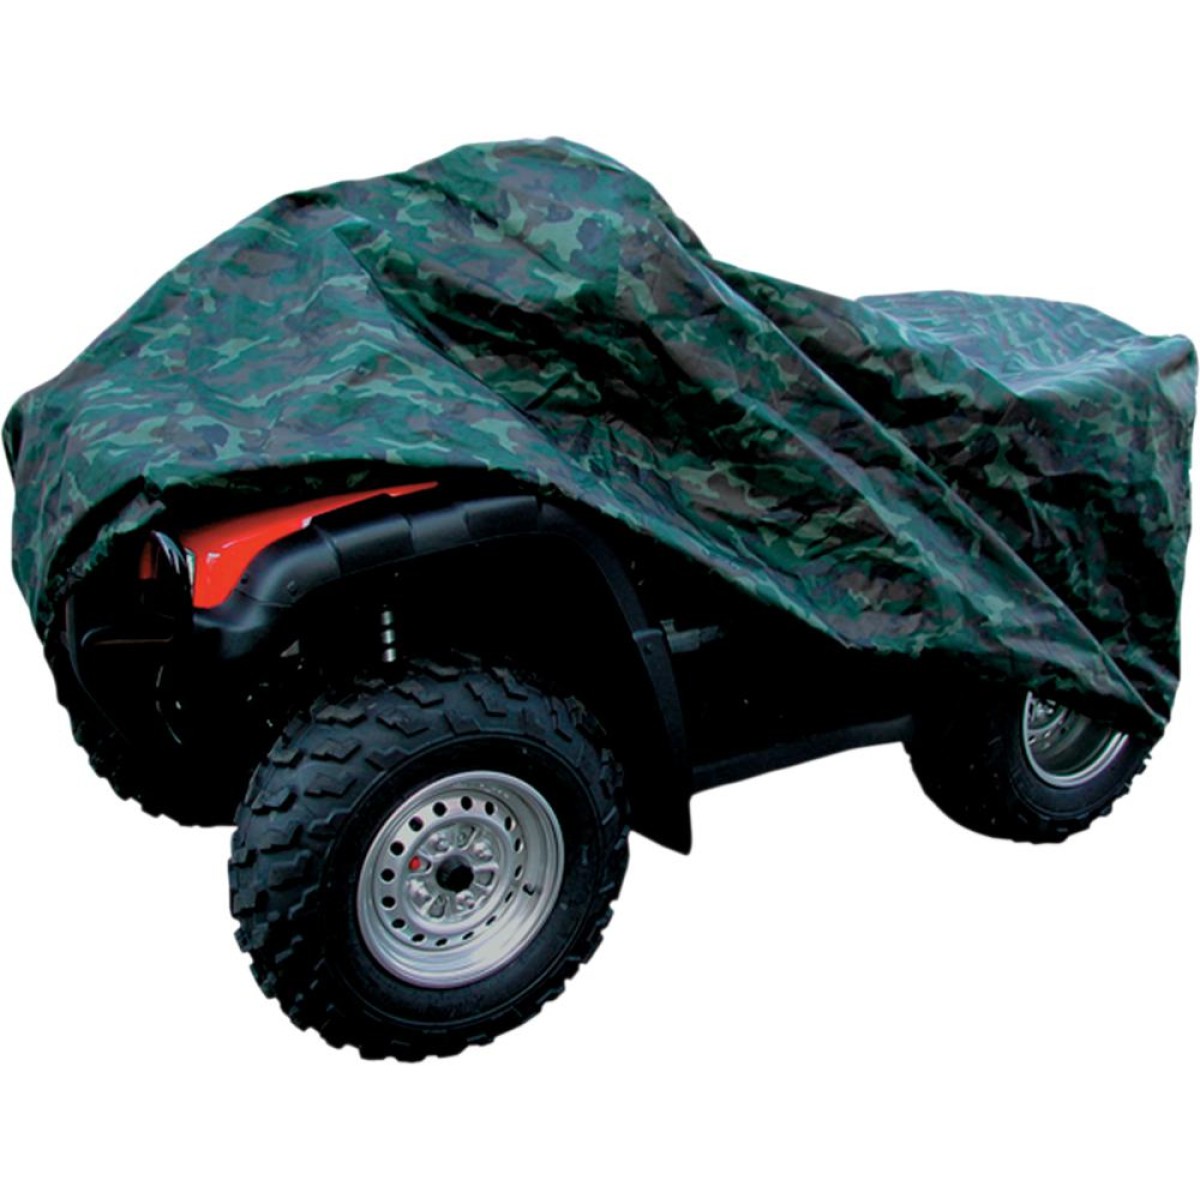 Housse de Protection Quad ATV LOGIC Camouflage Taille XL